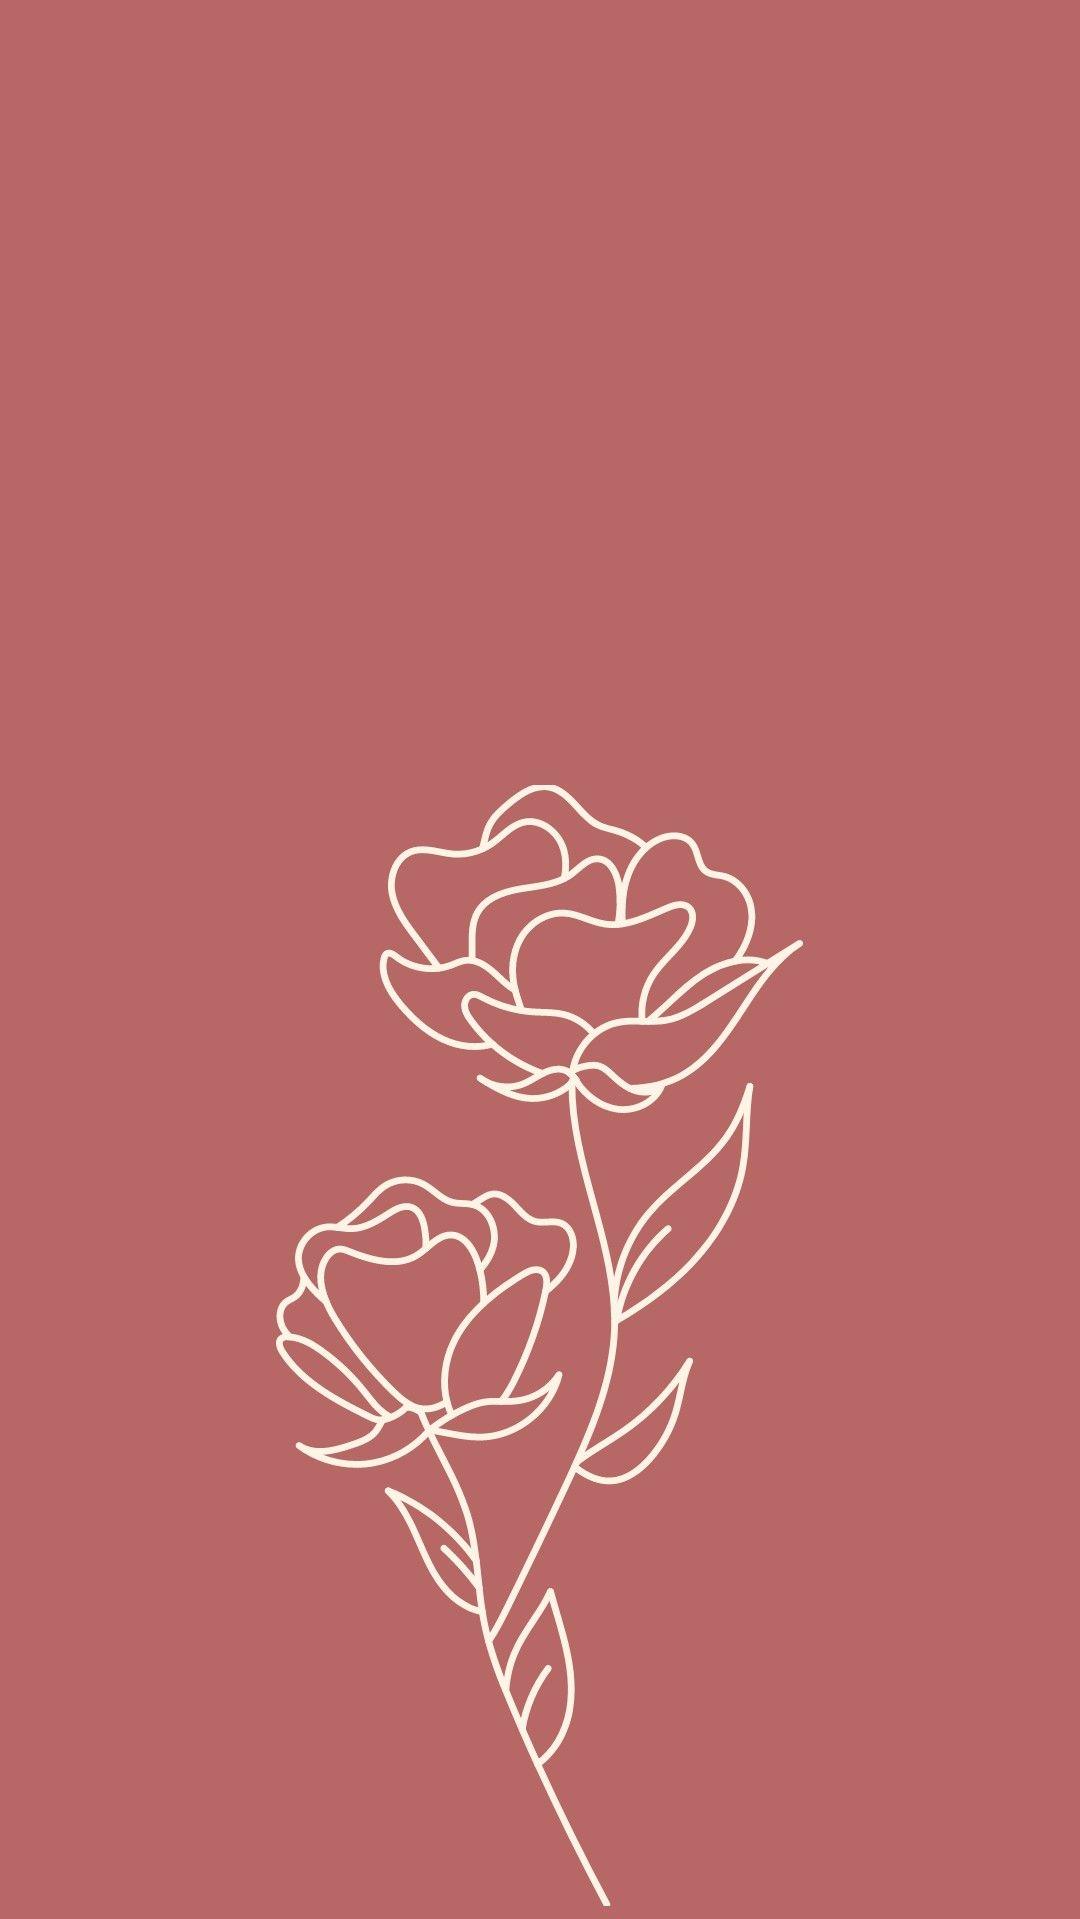 29+] Minimal Rose Wallpapers - WallpaperSafari